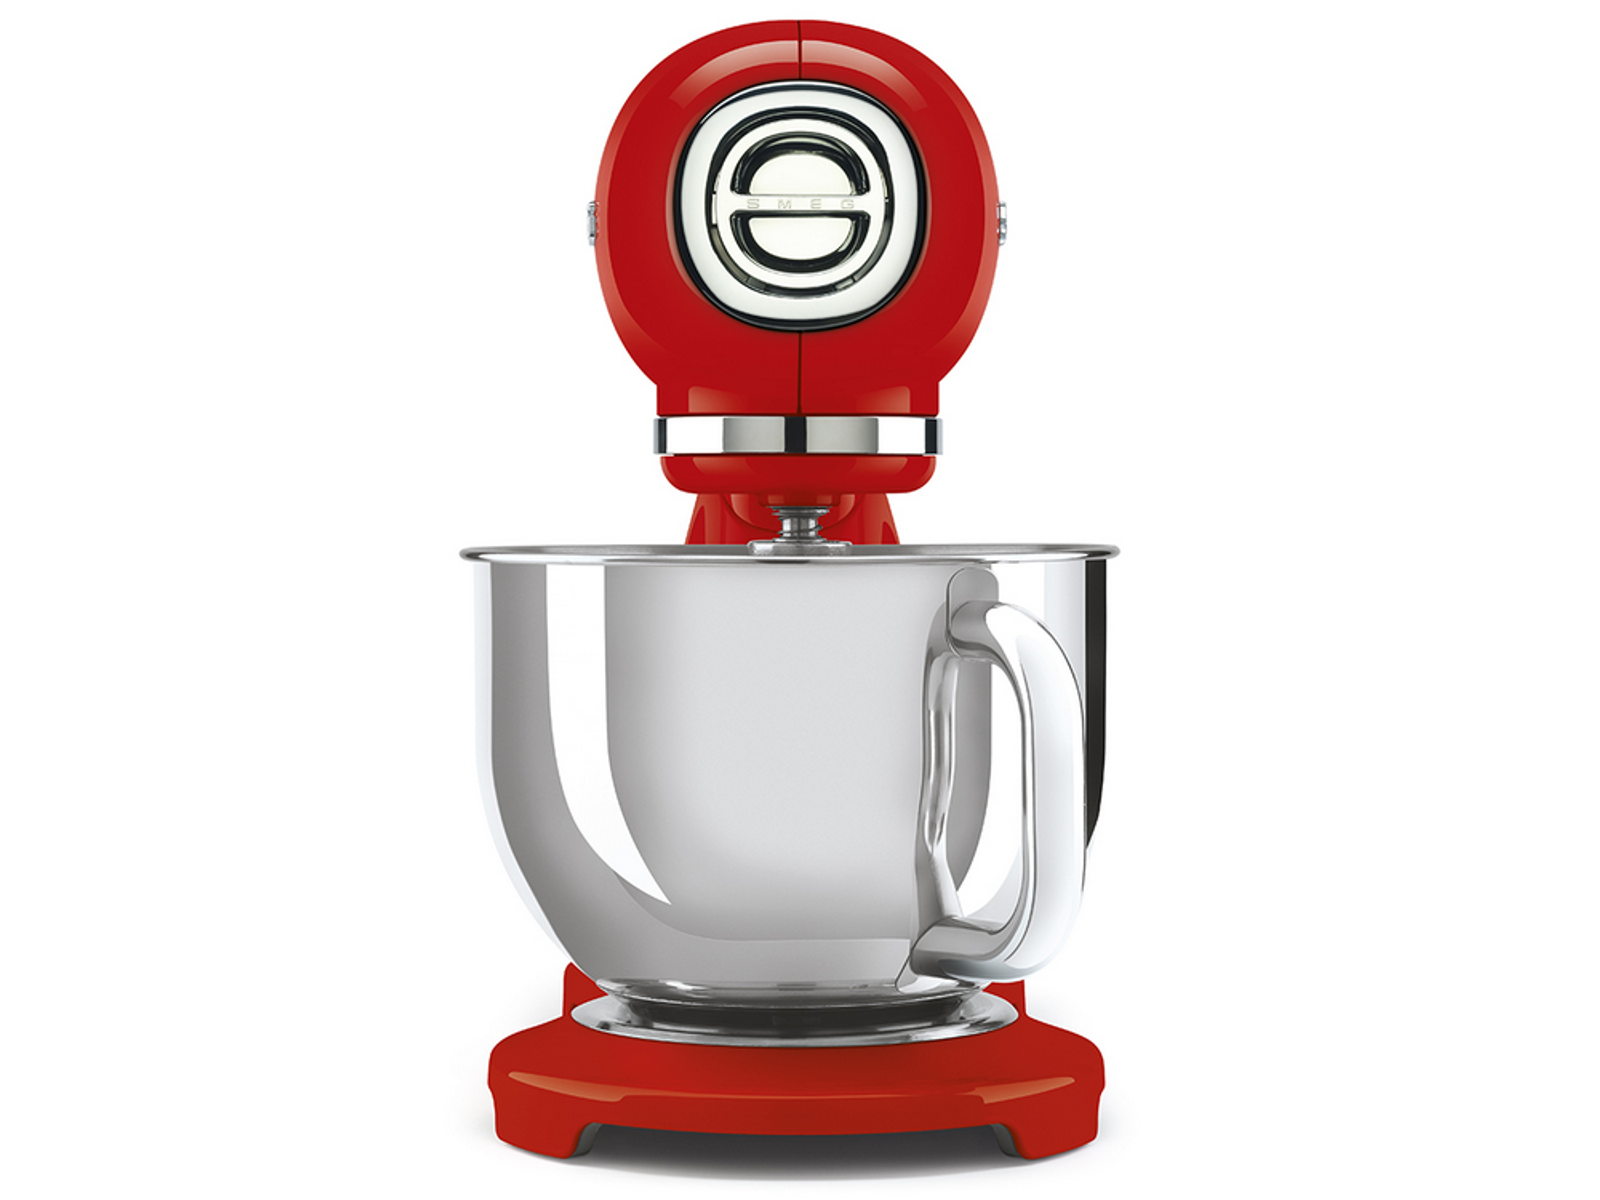 Smeg (800 Küchenmaschine 50\'s SMF03RDEU Design SMEG Bestseller|Kleingeräte|Küchenmaschine|Rot|smf03 Küchenmaschine Watt) Rot